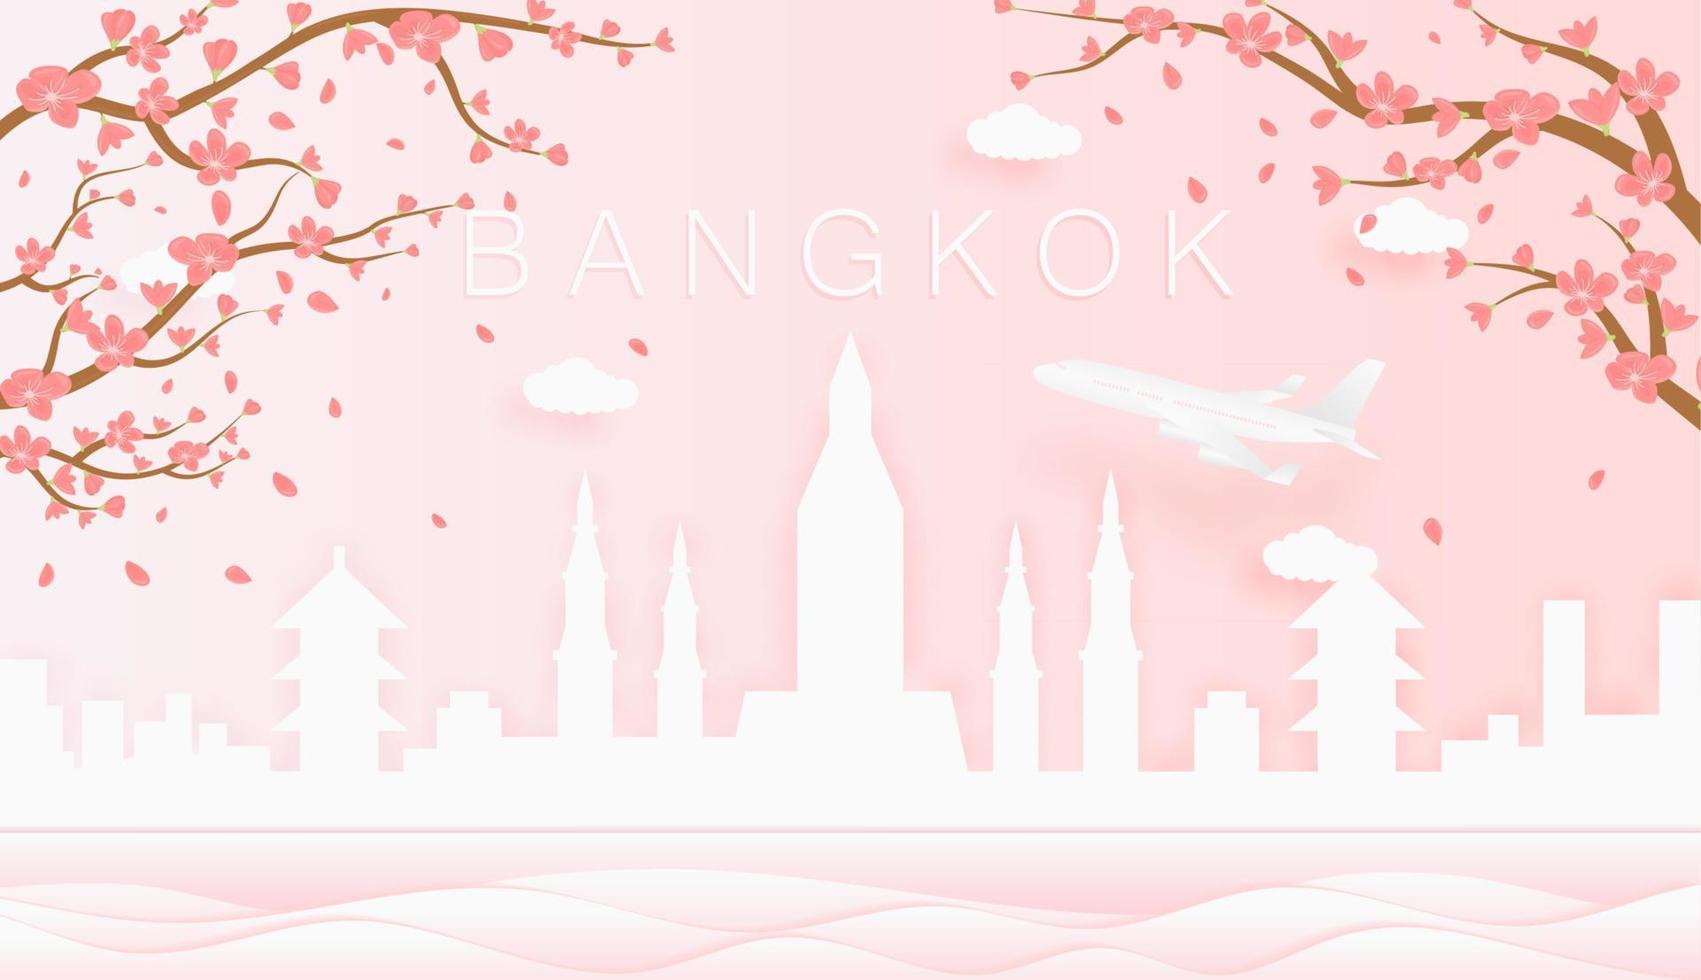 Panorama Reise Postkarte, Poster, Tour Werbung von Welt berühmt Sehenswürdigkeiten von Bangkok, Frühling Jahreszeit mit Blühen Blumen im Baum Vektor Symbol